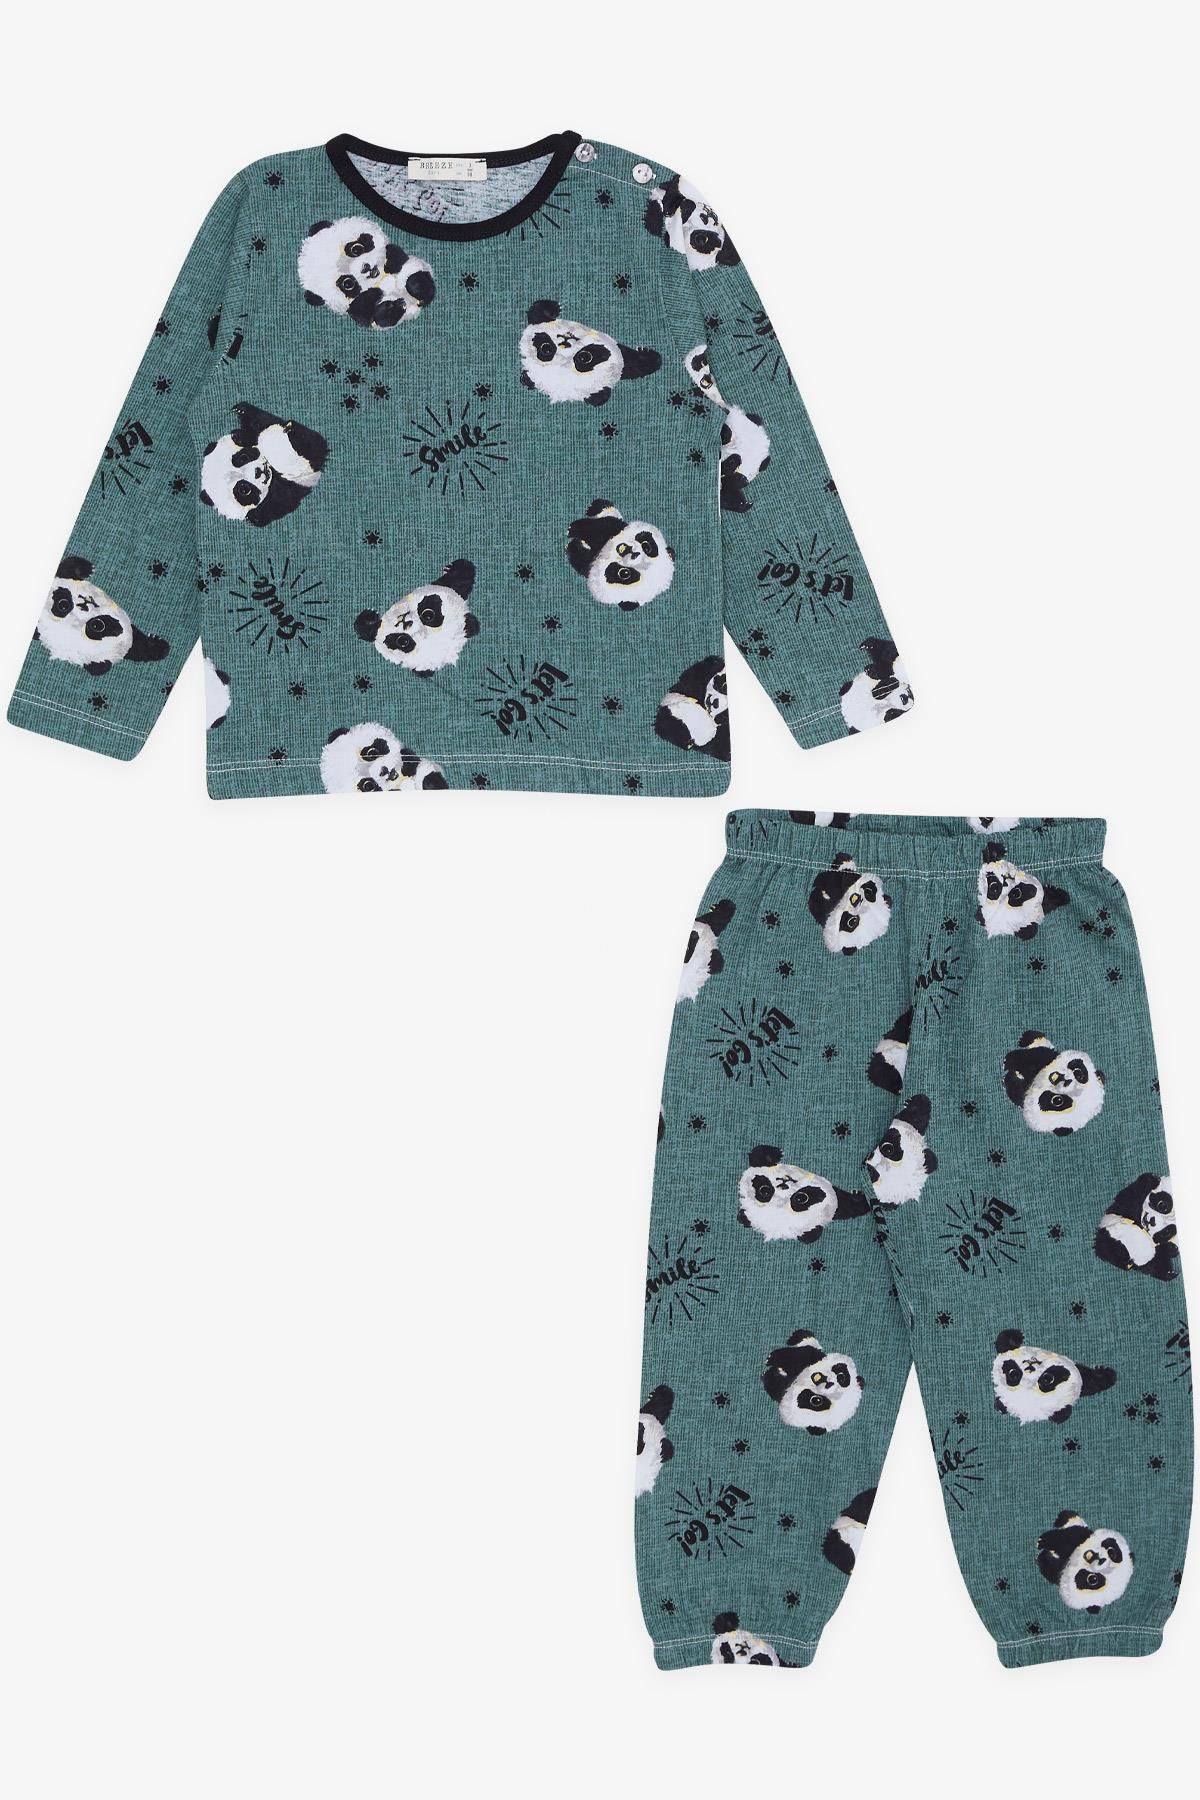 Breeze Girls & Boys Erkek Bebek Pijama Takımı Sevimli Panda Desenli 9 Ay-3 Yaş, Mint Yeşili